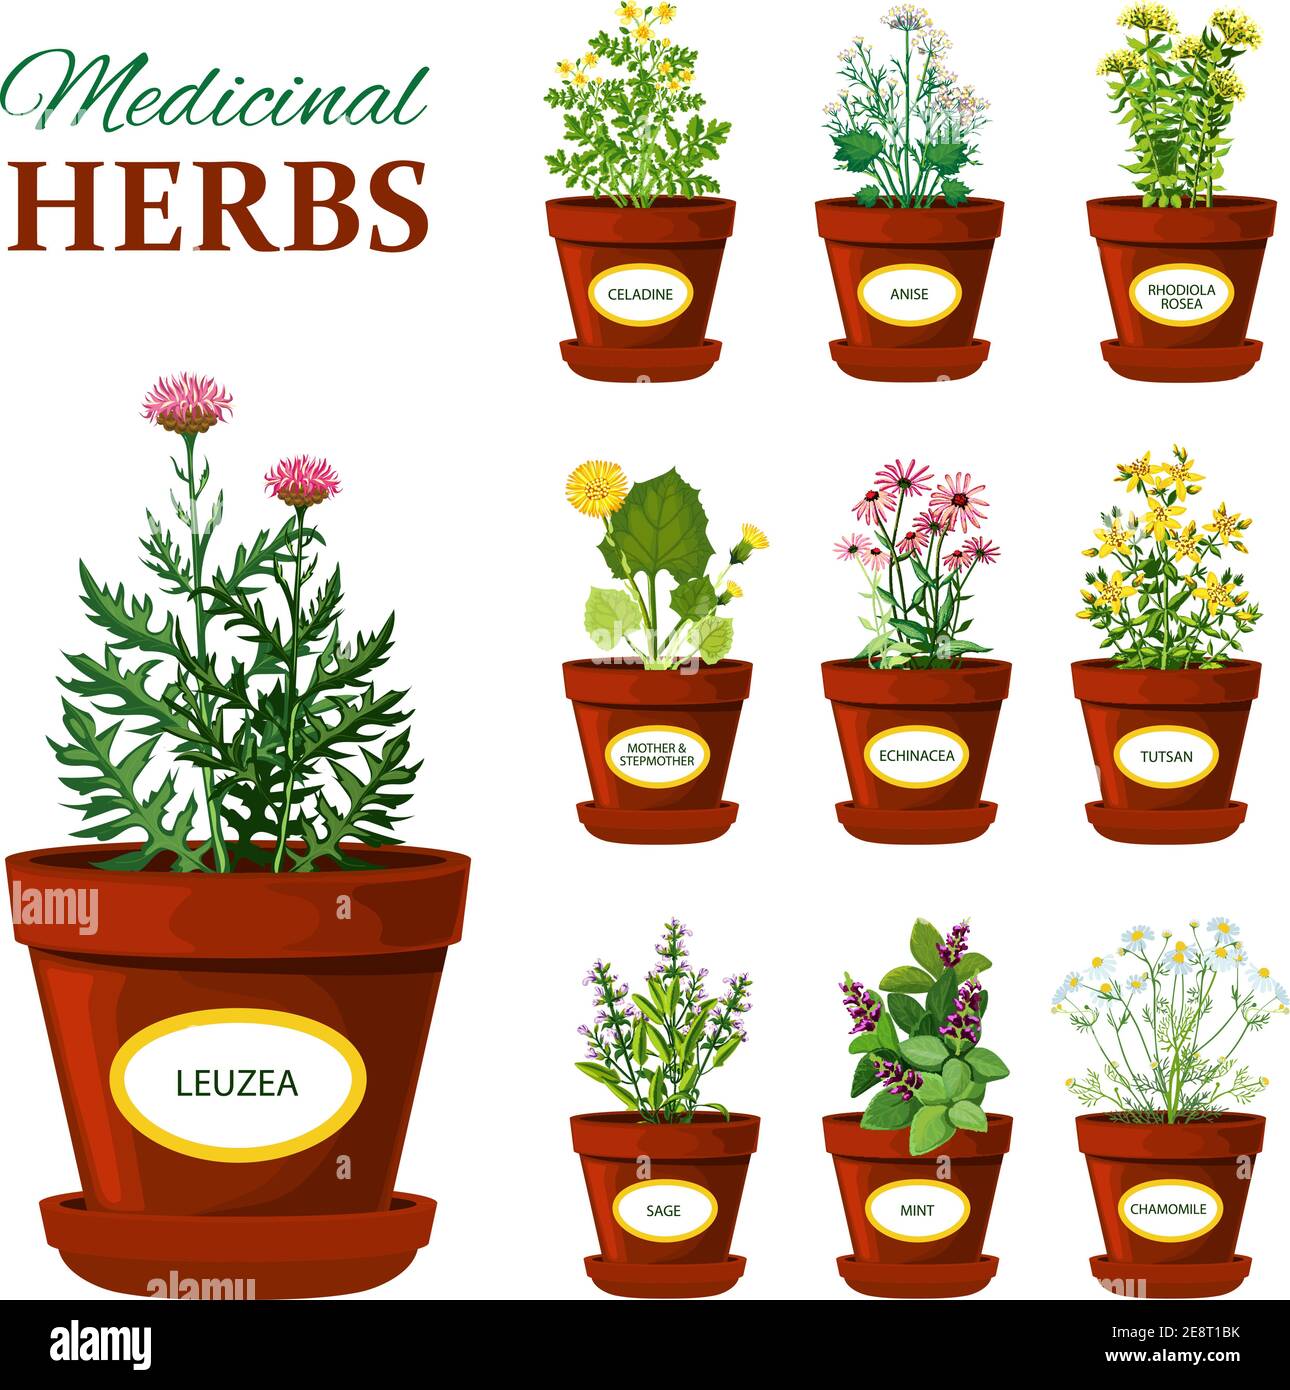 Ensemble d'herbes médicales dans des pots avec des étiquettes de leuzea sage menthe mère et steppmather tutsan echinacea illustration de vecteur isolé Illustration de Vecteur